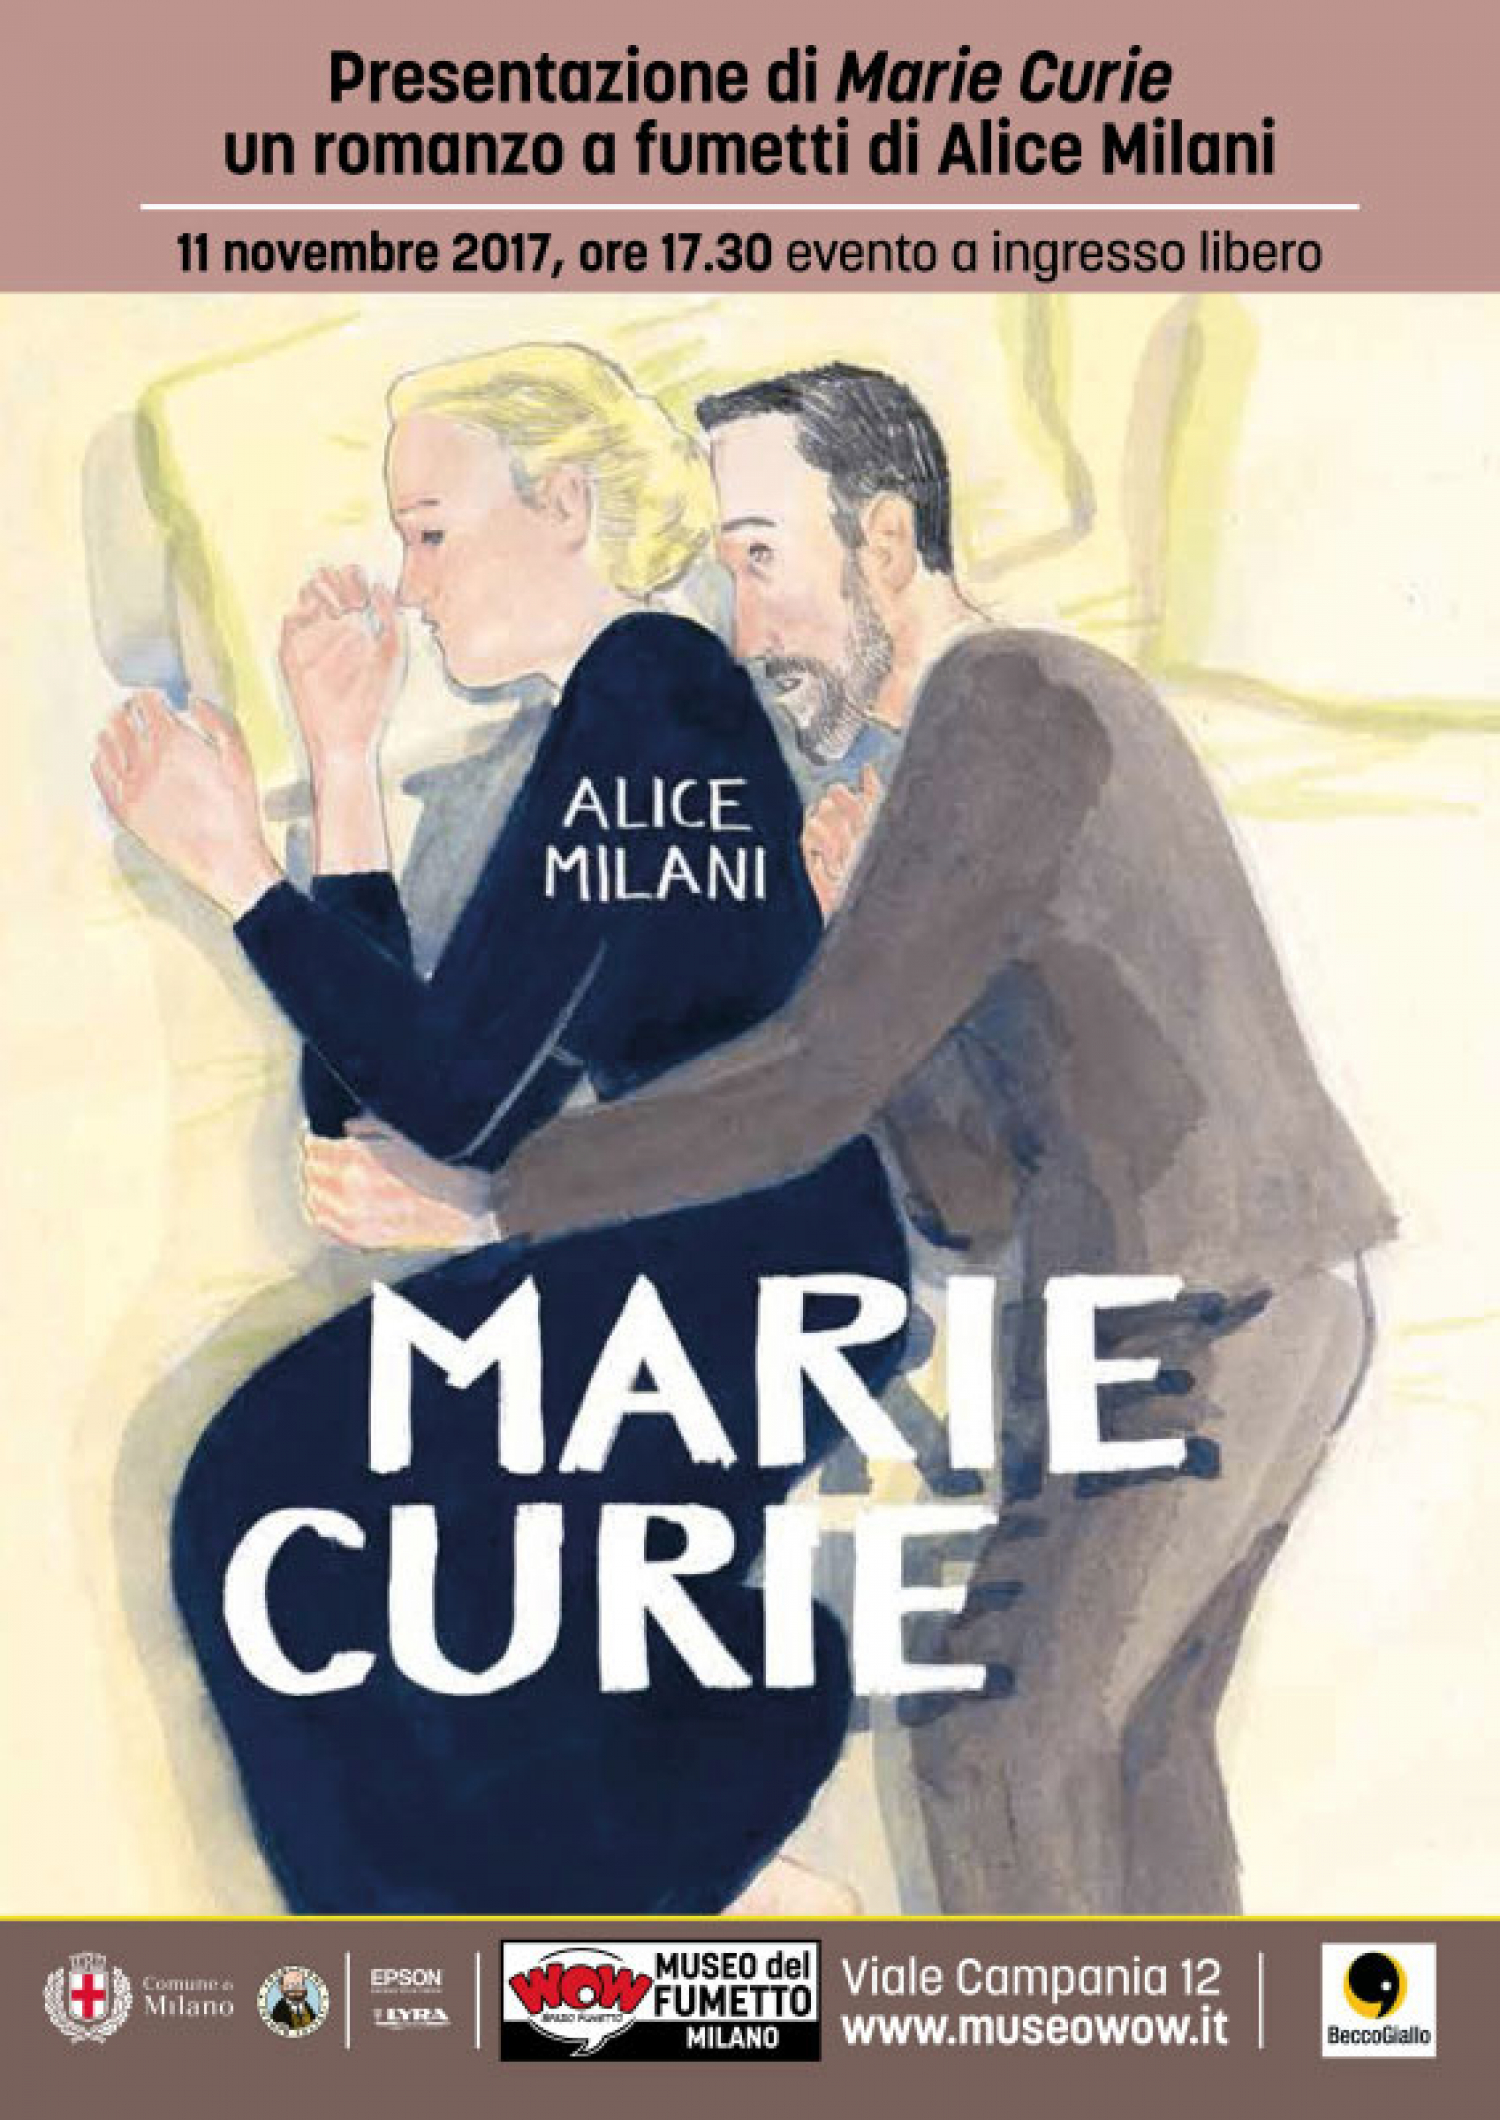 <p>Quando arriv&ograve; a Parigi e si iscrisse alla Sorbona, <strong>Maria Skłodowska Curie</strong> aveva gi&agrave; 24 anni. In Polonia aveva dovuto lavorare come governante per mettere da parte i soldi necessari a intraprendere gli studi in scienze fisiche. Il nome con cui divenne famosa &egrave; quello del marito Pierre Curie, che la aiut&ograve; nelle ricerche su una sostanza sconosciuta che aveva propriet&agrave; assai curiose: emetteva energia, luce, calore. Era l&#39;alba della fisica nucleare, ma anche l&#39;inizio dell&#39;era delle donne nella scienza. Dopo la morte improvvisa di Pierre, Marie port&ograve; avanti la sua carriera, fin troppo brillante e indipendente, scontrandosi con la mentalit&agrave; conservatrice della Francia del primo Novecento. Le vicende private si intrecciano cos&igrave; inevitabilmente con la ricerca scientifica, finendo per offuscarne gli eccezionali traguardi. <strong>Sabato 11 novembre alle 17:30 l&#39;autrice <a target="_blank" href="http://alicemilani.org">Alice Milani</a> sar&agrave; a WOW Spazio Fumetto per parlare&nbsp;del&nbsp;suo nuovo romanzo a fumetti, <a target="_blank" href="http://www.beccogiallo.org/shop/201-marie-curie.html">Marie Curie</a>, edito da <a target="_blank" href="http://main.beccogiallo.net">BeccoGiallo</a>. Ingresso libero all&#39;evento.</strong> <em>Domenica 12 novembre Alice Milani torner&agrave; da noi per il <a target="_blank" href="http://www.museowow.it/wow/workshop-disegno-ambientazione/">workshop per adulti Disegno di ambientazione</a>: per info e iscrizioni&nbsp;<a target="_blank" href="mailto:edu@museowow.it">edu@museowow.it</a></em> &nbsp; <strong>Alice Milani</strong> &egrave; nata a Pisa nel 1986. Ha studiato pittura, incisione e tecniche di stampa a Torino e a Bruxelles. &Egrave; stata una delle fondatrici del collettivo La Trama, con cui ha realizzato e distribuito fumetti autoprodotti fino al 2015. Il suo primo romanzo a fumetti Wisława Szymborska, si d&agrave; il caso che io sia qui (BeccoGiallo, 2015) &egrave; dedicato alla poetessa polacca vincitrice del premio Nobel, ed &egrave; stato tradotto in polacco. Nel 2016 esce Tumulto, per Eris Edizioni, racconto di viaggio e di formazione, scritto e disegnato a quattro mani con Silvia Rocchi. Dal 2017 dirige una nuova collana di fumetto di finzione per BeccoGiallo. I referenti scientifici per questo lavoro sono Anna Nobili e Andrea Milani. <strong>Anna Nobili</strong> &egrave; nata nel 1949 in un paesino in provincia di Rieti. &Egrave; docente di fisica all&#39;Universit&agrave; di Pisa e si occupa di esperimenti spaziali di precisione. &Egrave; stata tra le prime ragazze ammesse a studiare fisica presso la Scuola Normale Superiore di Pisa. <strong>Andrea Milani</strong> &egrave; nato a Firenze nel 1948. &Egrave; docente di matematica all&#39;Universit&agrave; di Pisa e si occupa di meccanica celeste, in particolare del calcolo delle orbite degli asteroidi.</p>